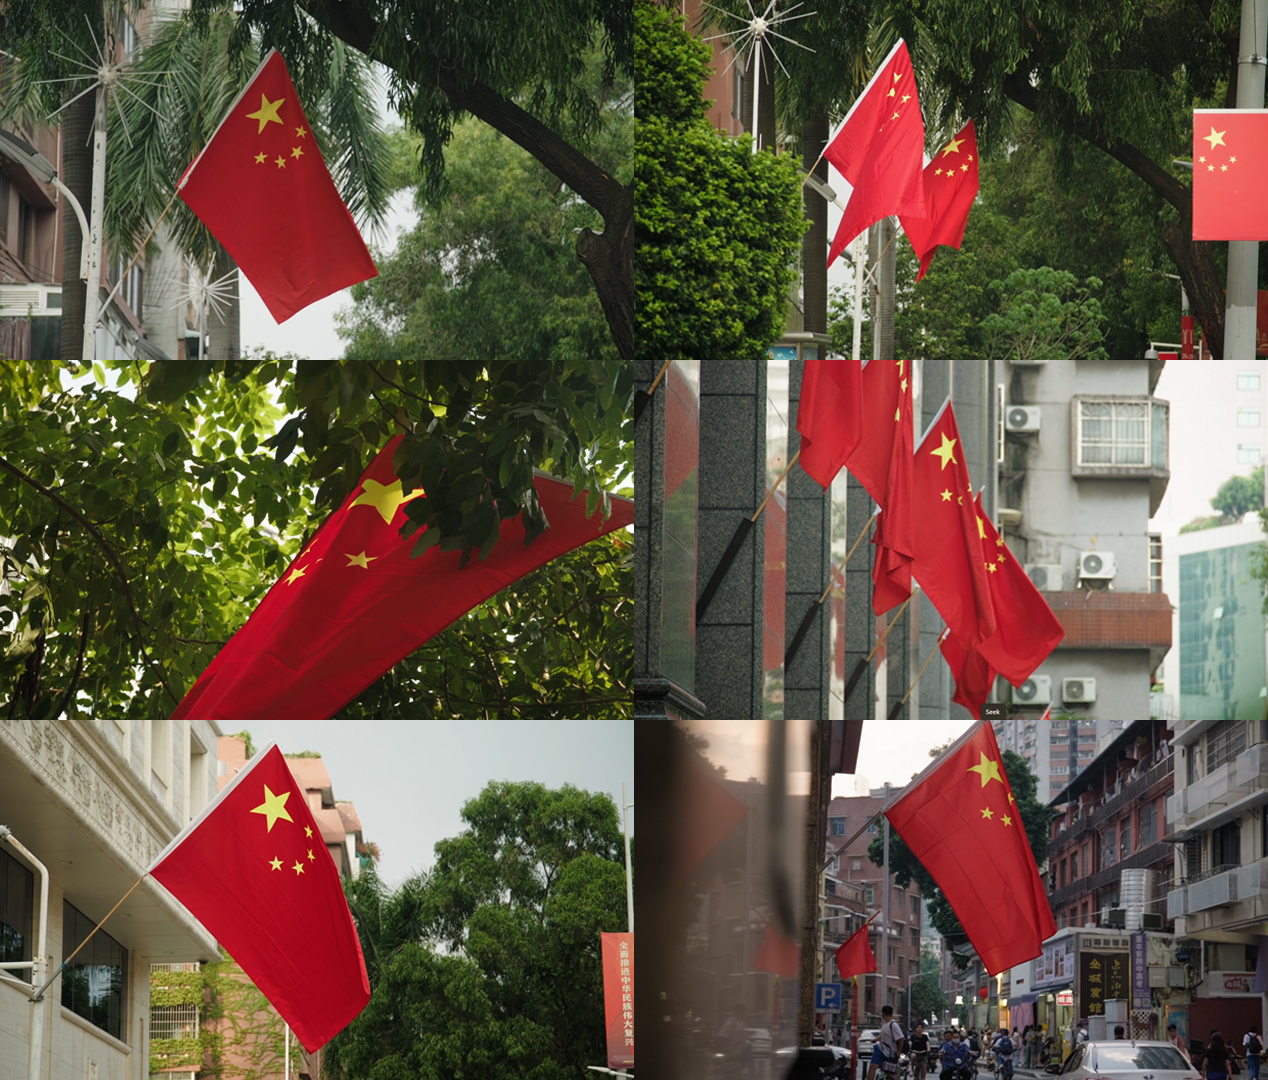 国旗 红旗 喜迎 国庆节 城市街道